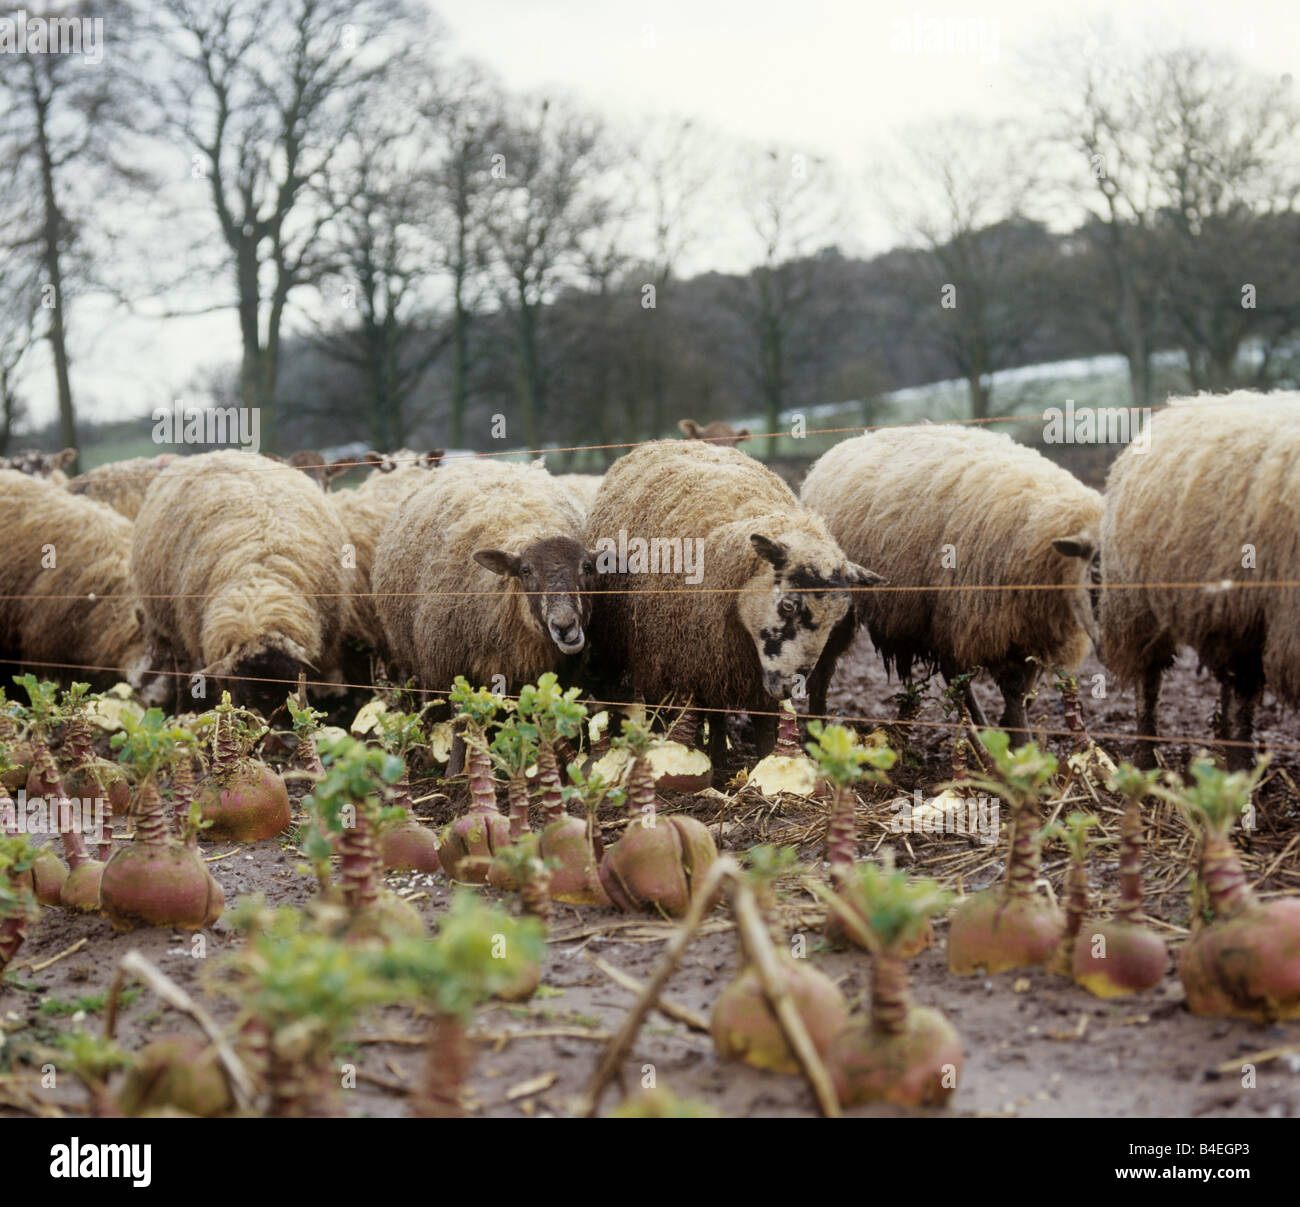 Al norte de Inglaterra mula OVEJA oveja cazando suecos en las húmedas tierras de invierno sombrío Foto de stock